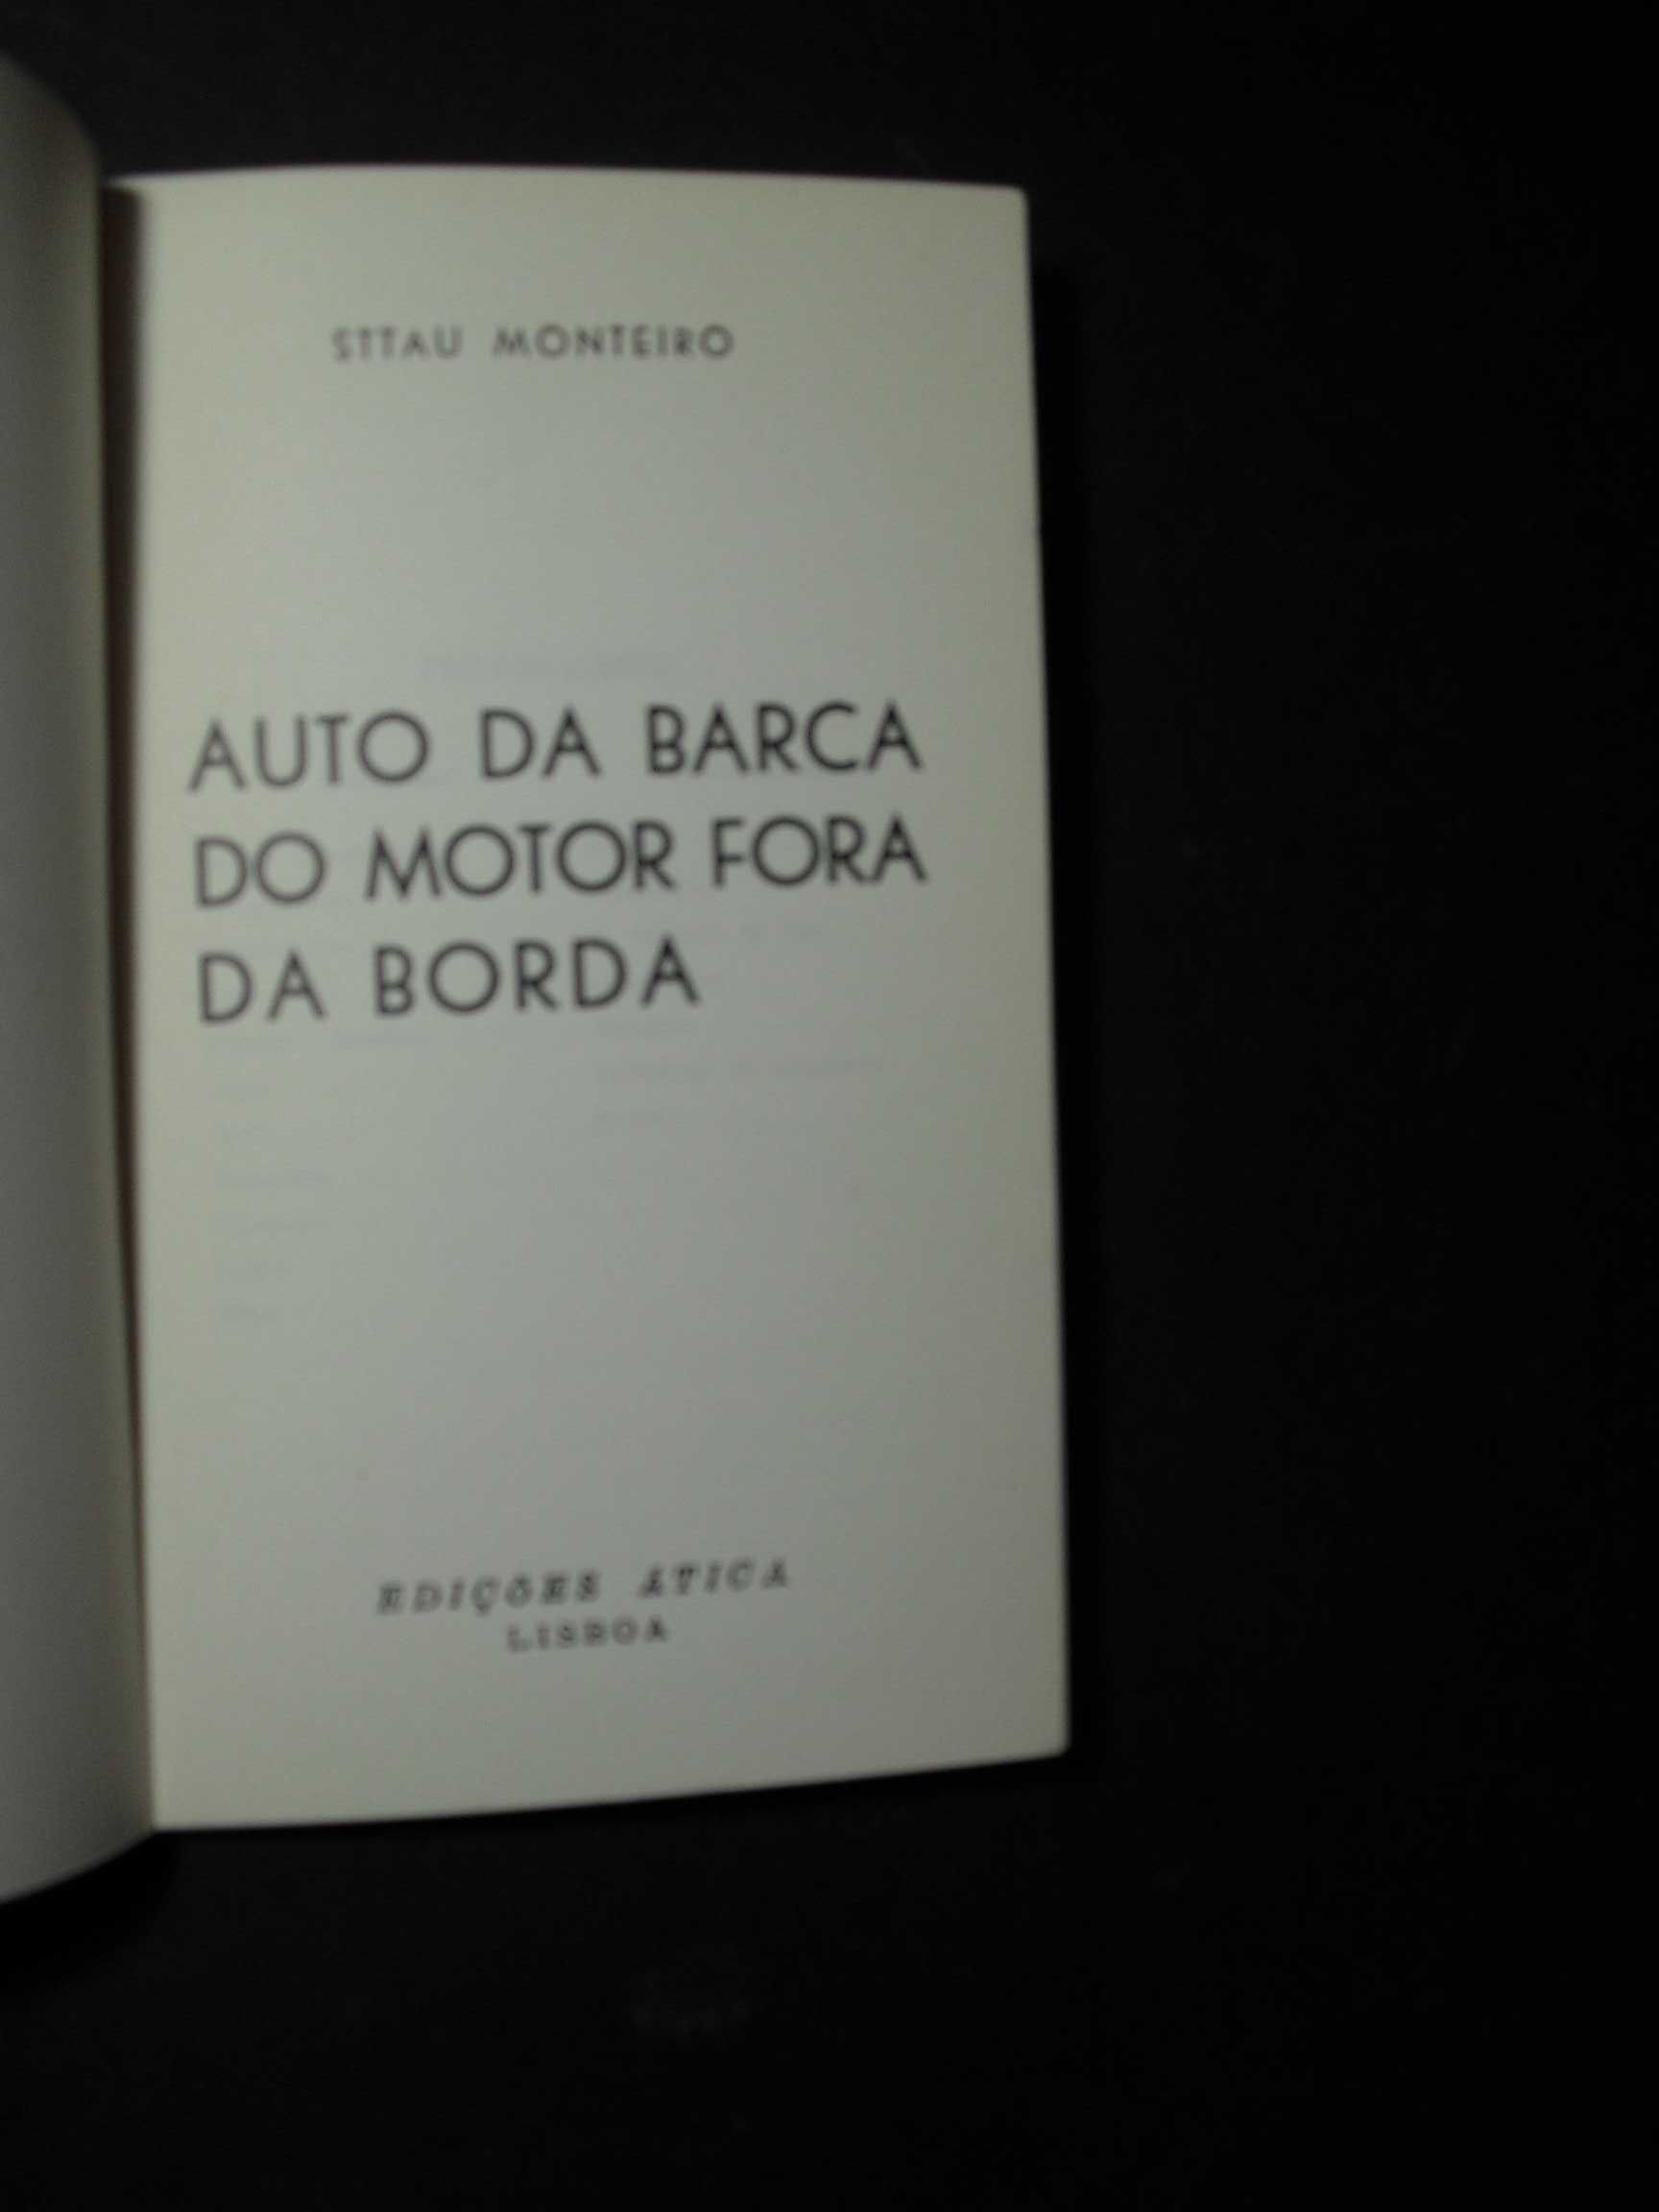 Monteiro (Sttau);Auto do Motor fora de Borda;Edições ática,1ª Edição,